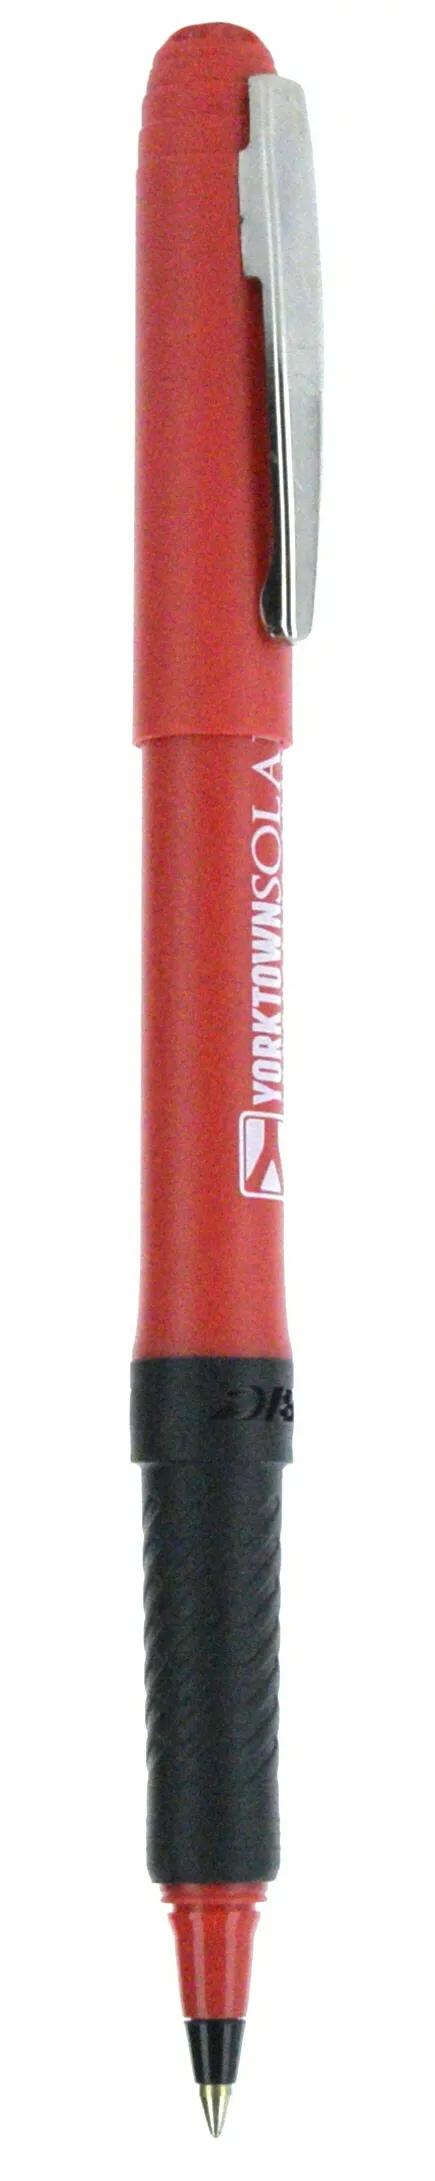 BIC® Grip Roller Pen 119 of 147